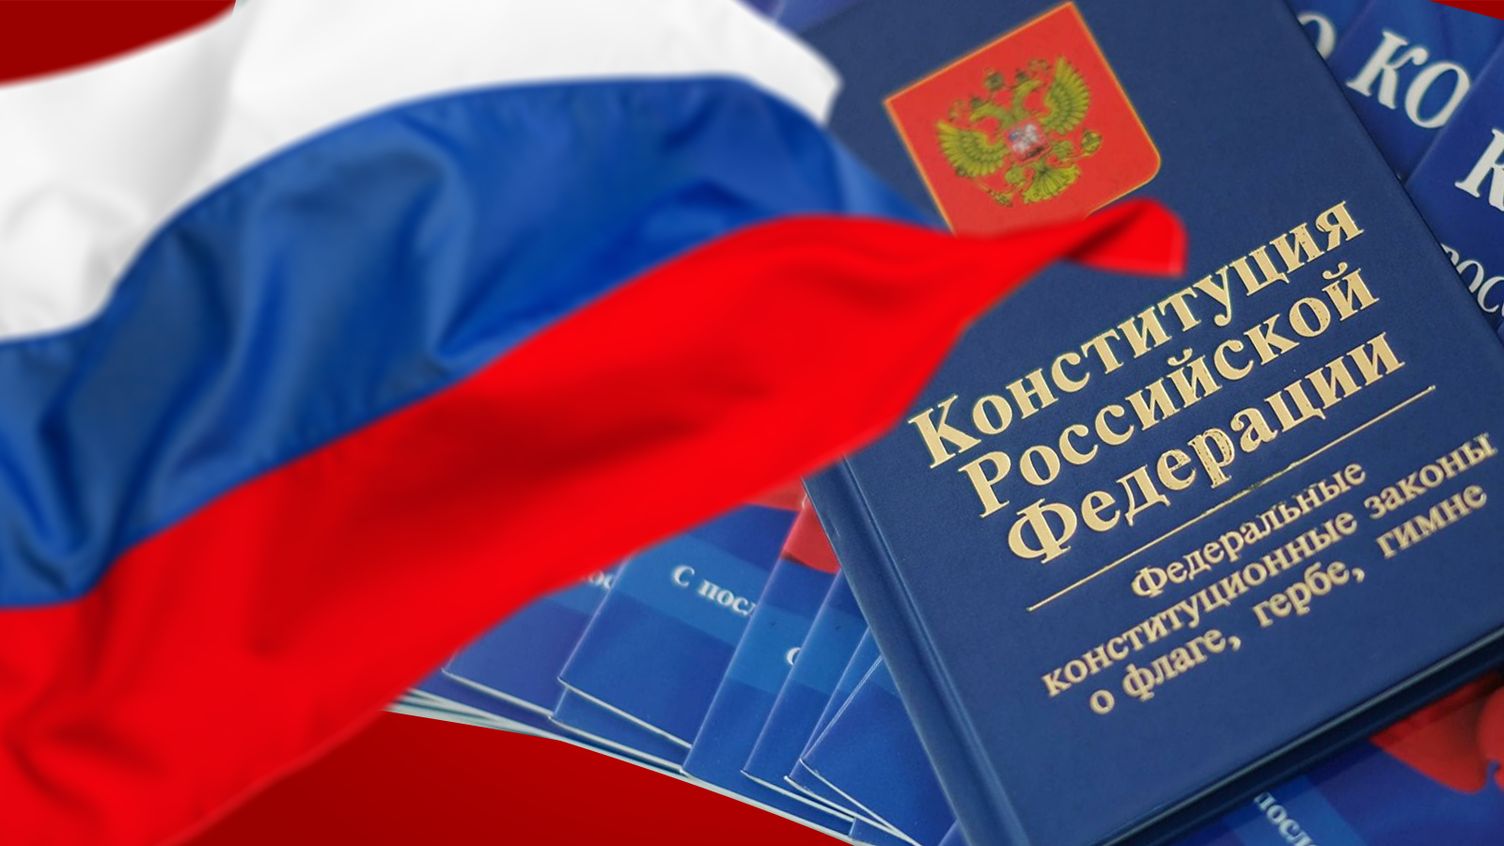 День конституции россии